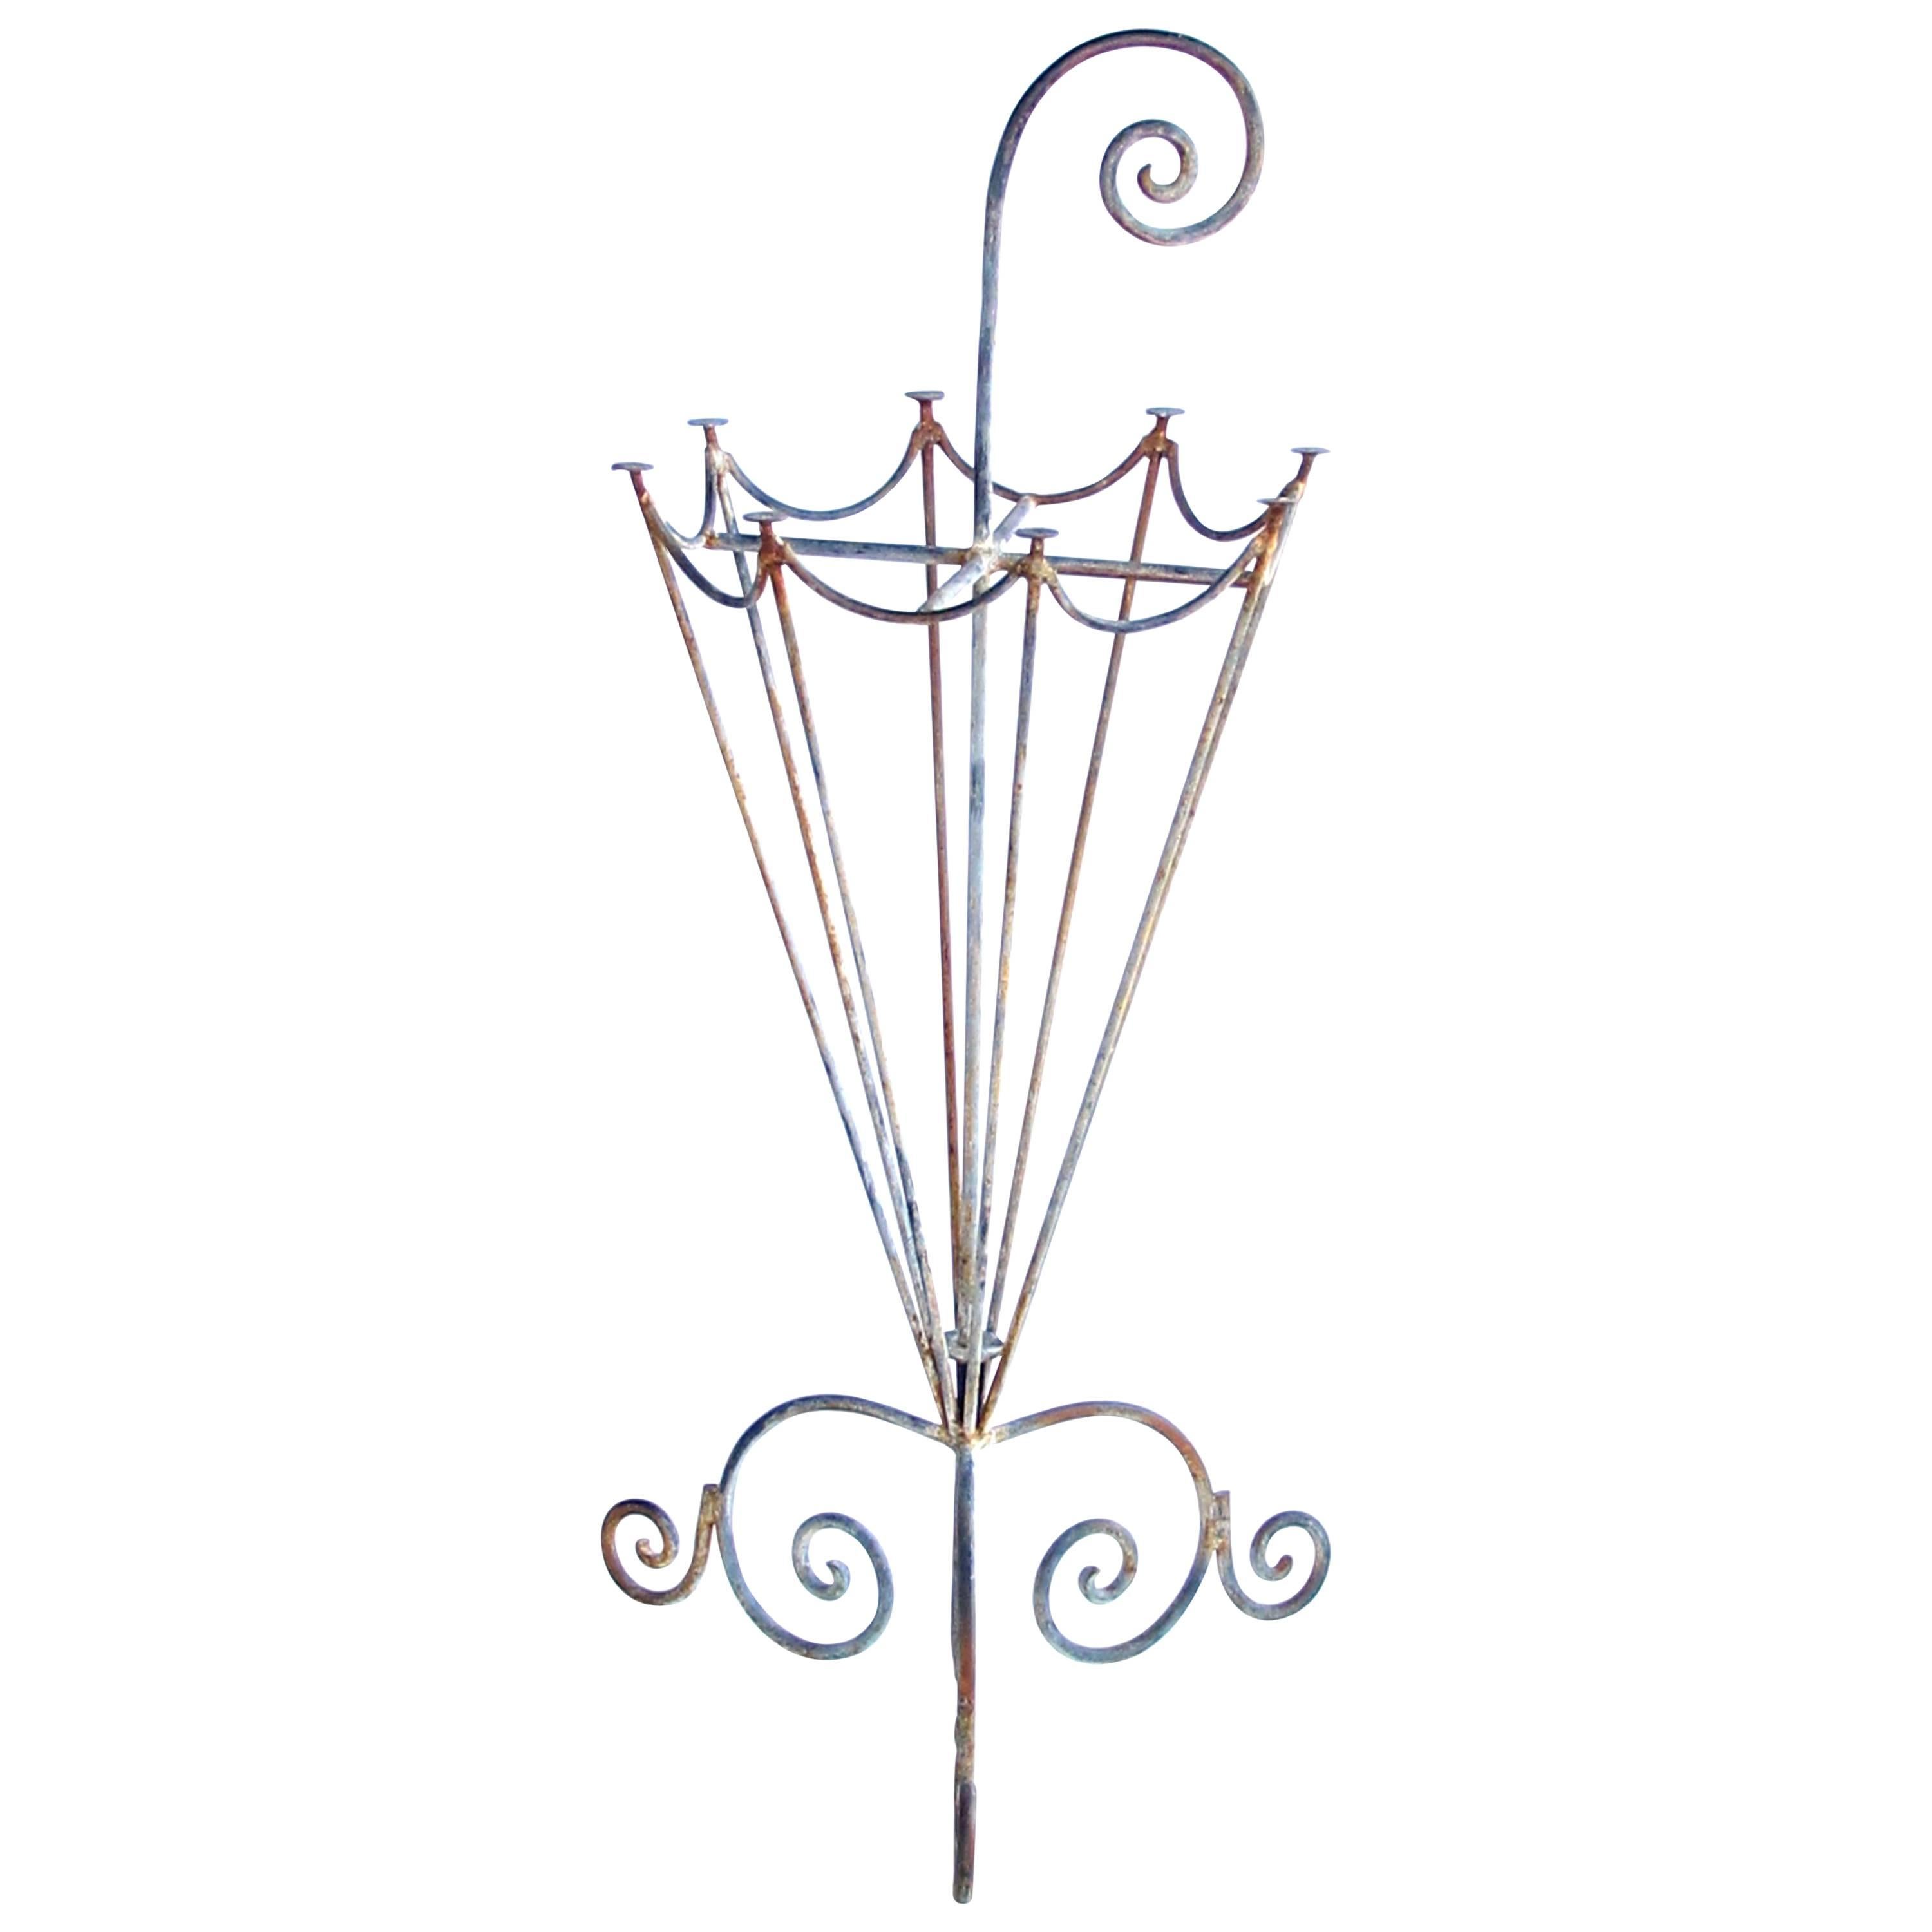 Bezaubernder französischer durchbrochener Schirmständer aus Metall aus den 1920er Jahren